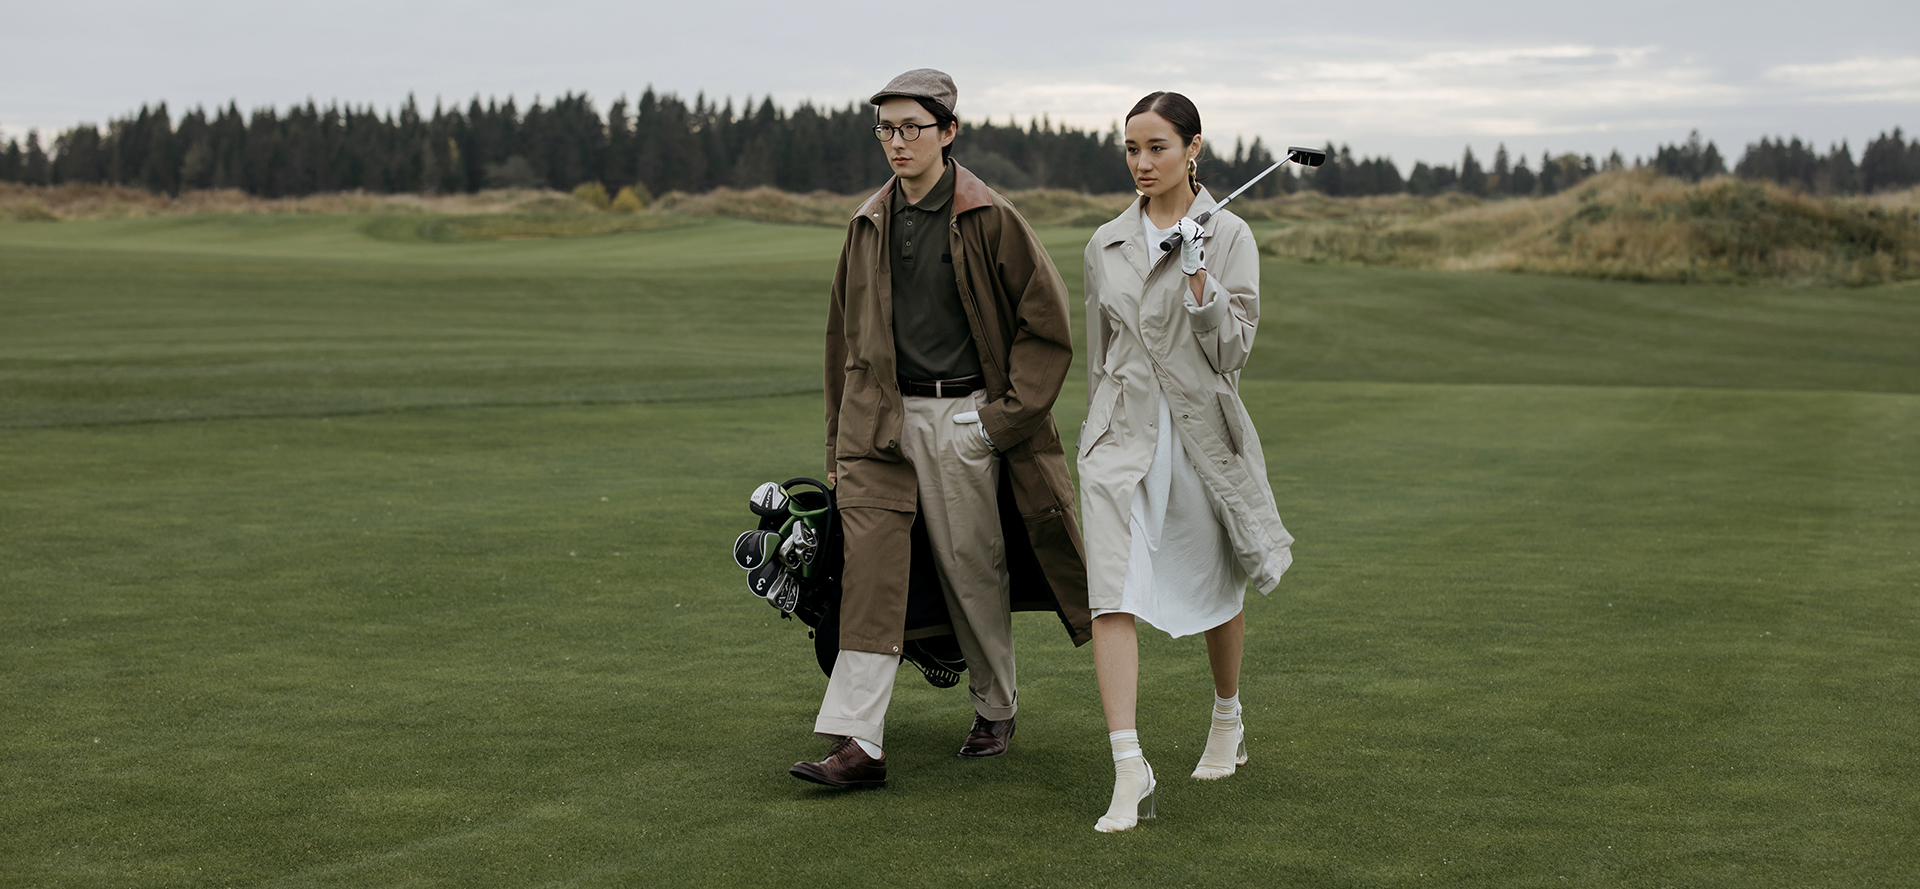 Golfspillere på en date.